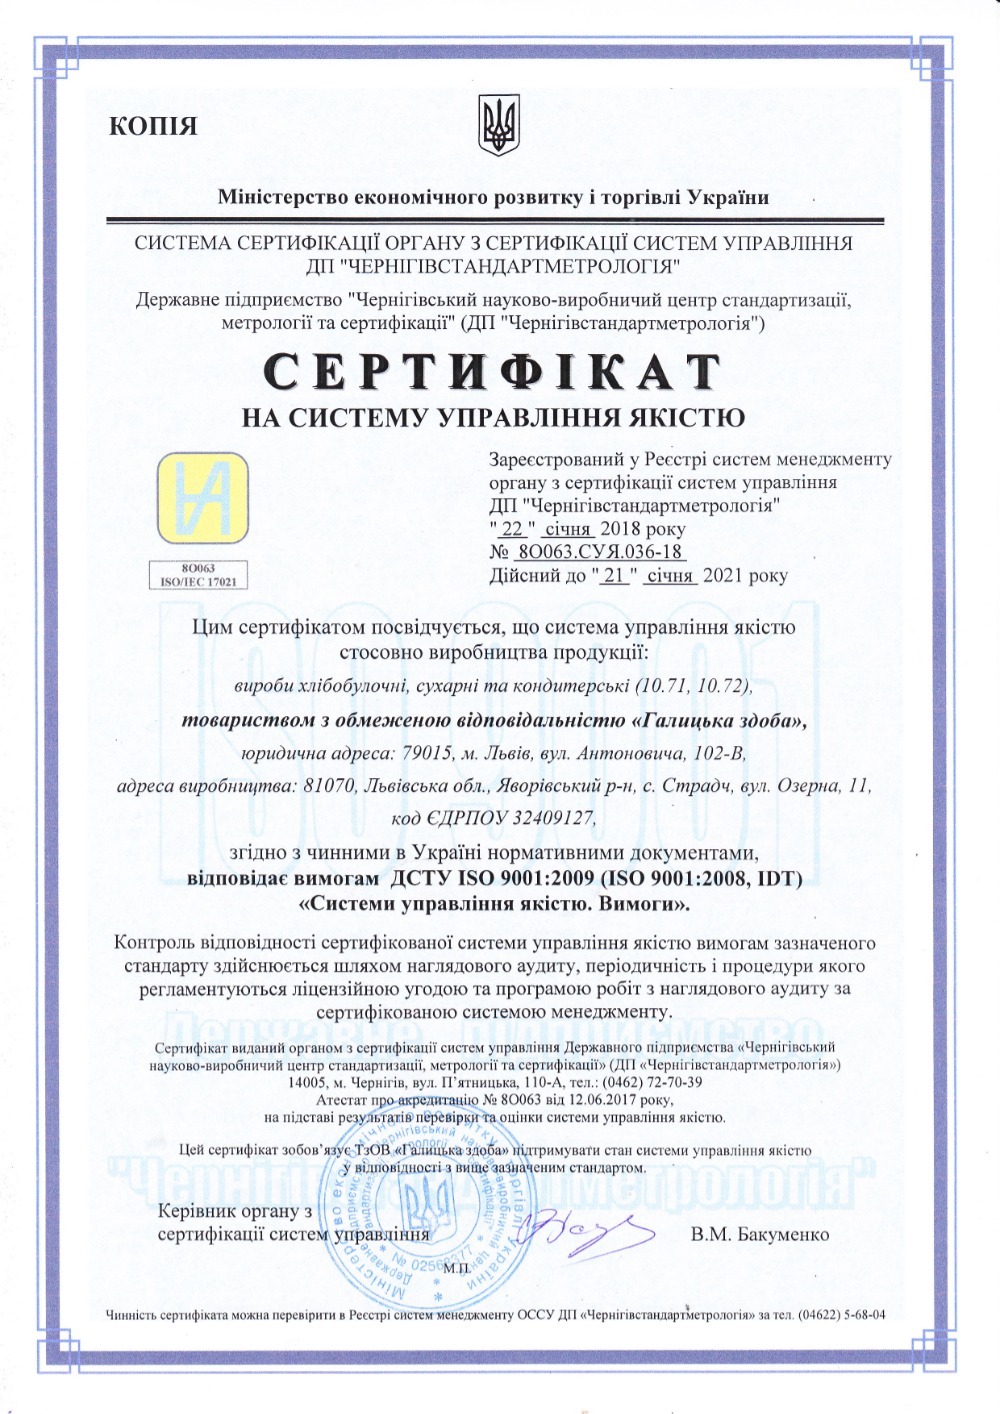 «Галицька здоба» успішно пройшла ресертифікацію на відповідність стандартам системи управління якістю ISO 9001:2009. Відповідно за результатами проведеного аудиту, «Галицька здоба» в черговий раз підтвердила відповідність сертифікату.